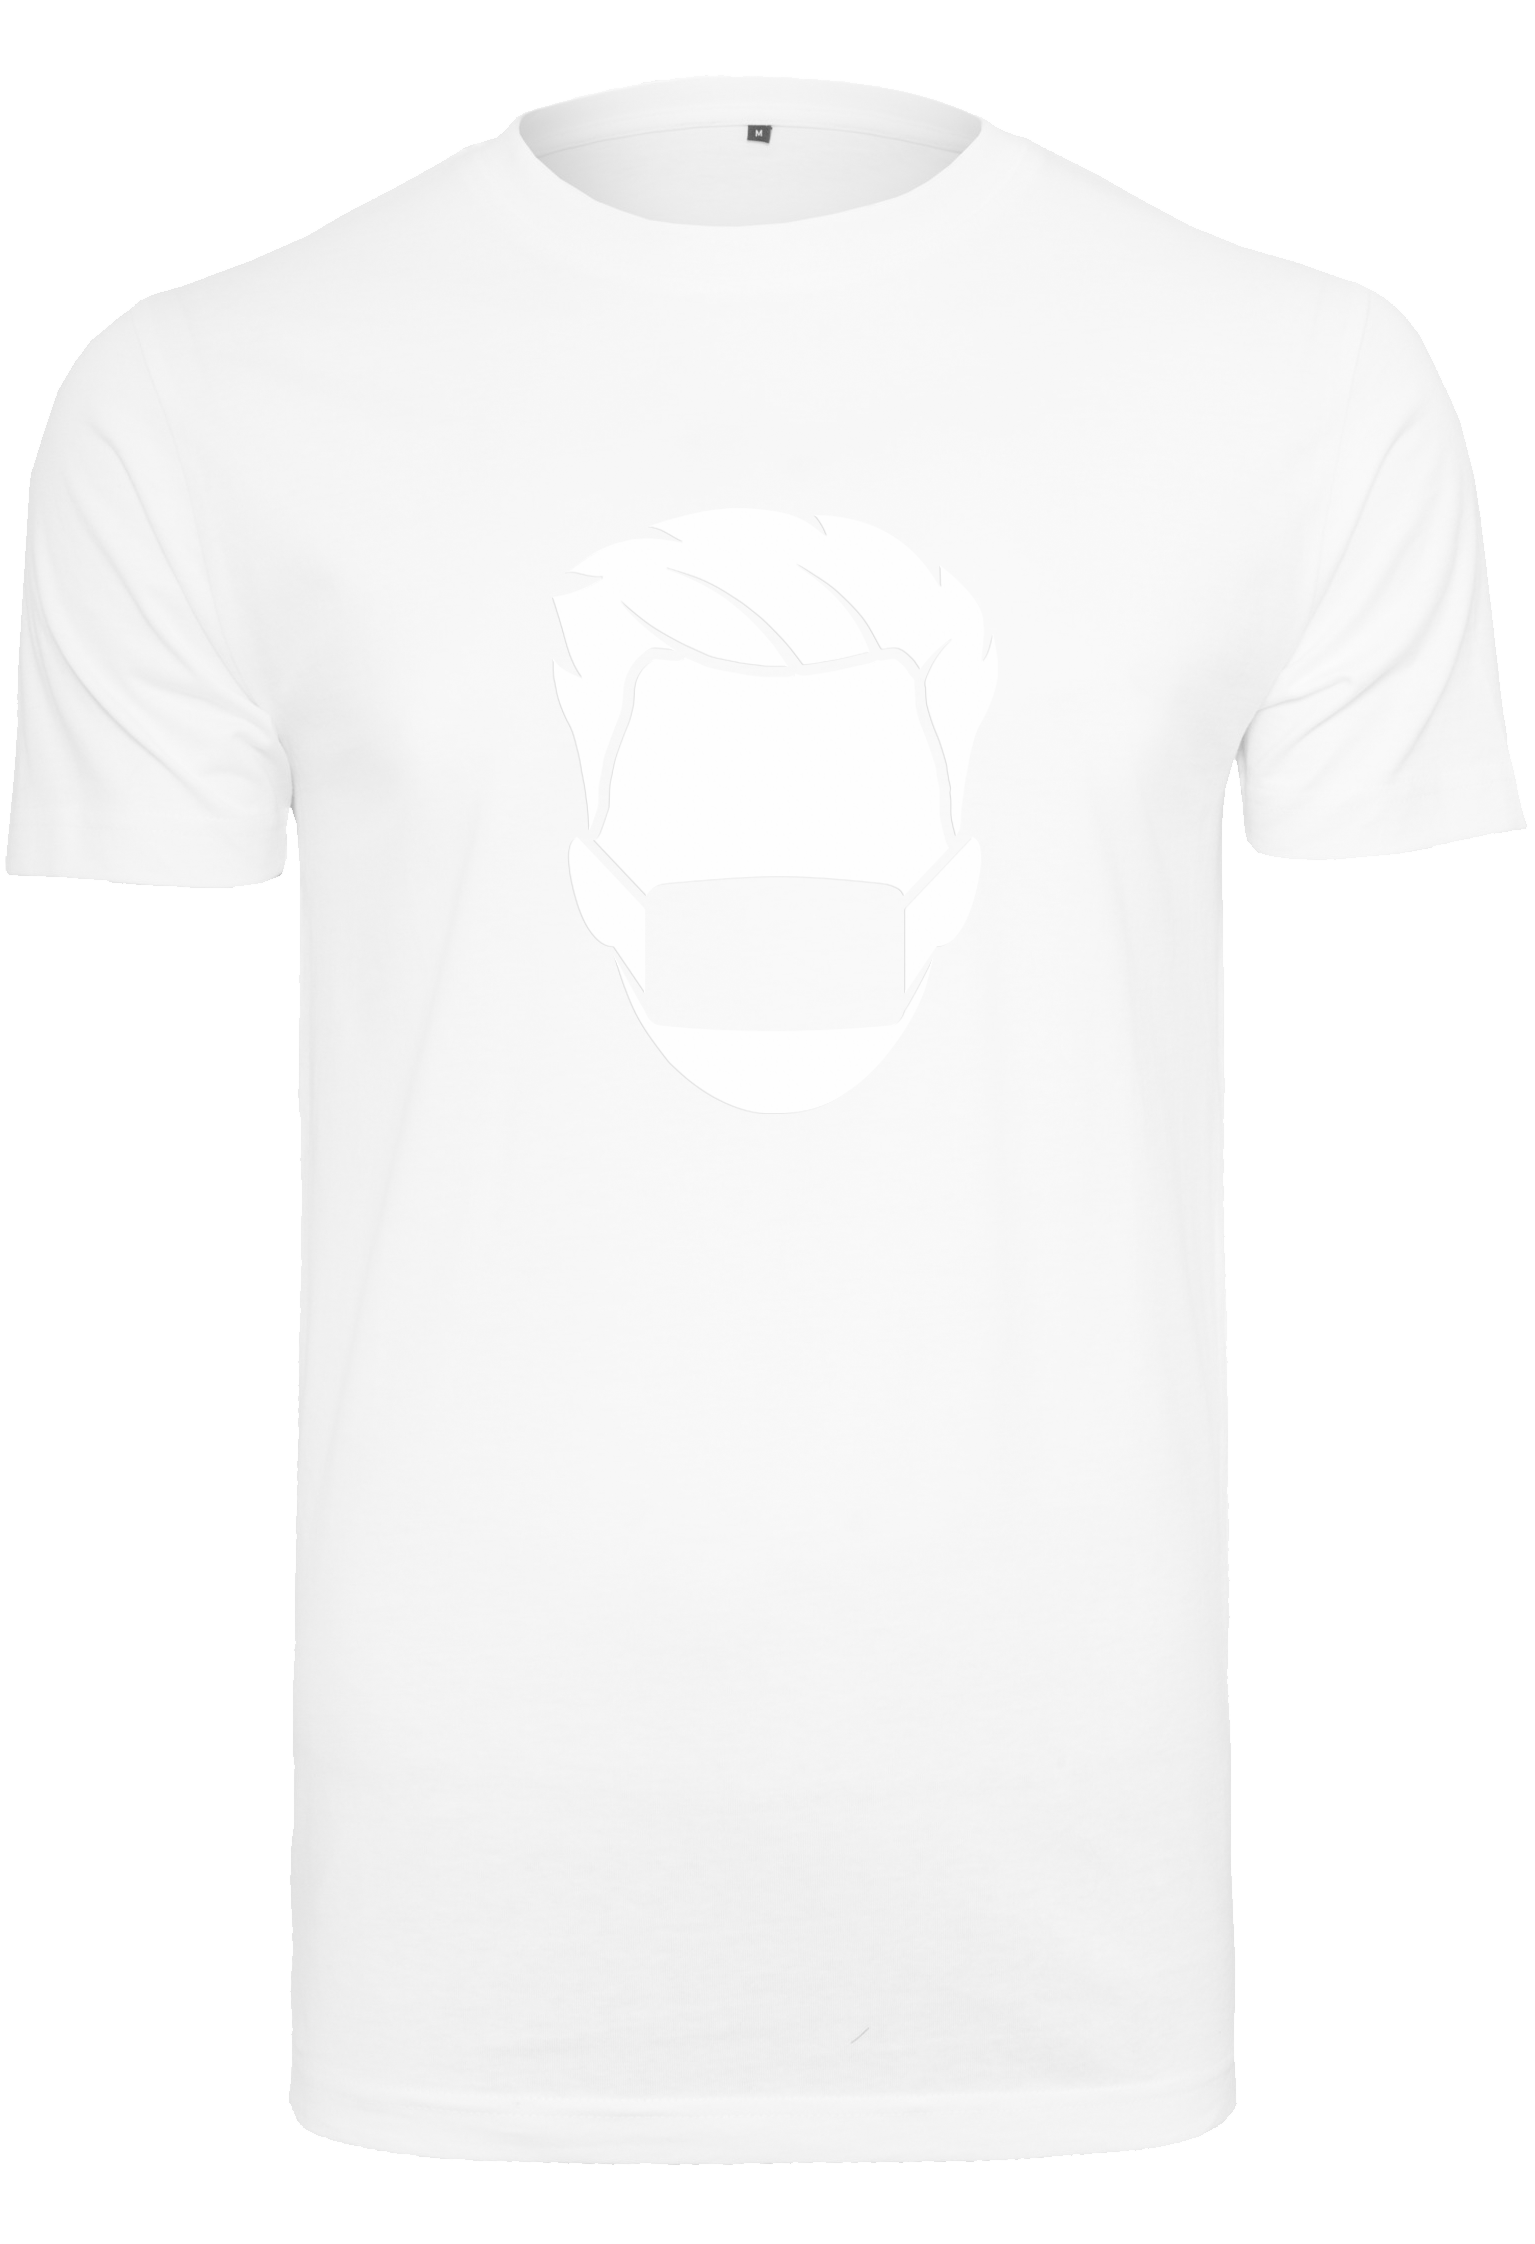 Jakli white T-Shirt